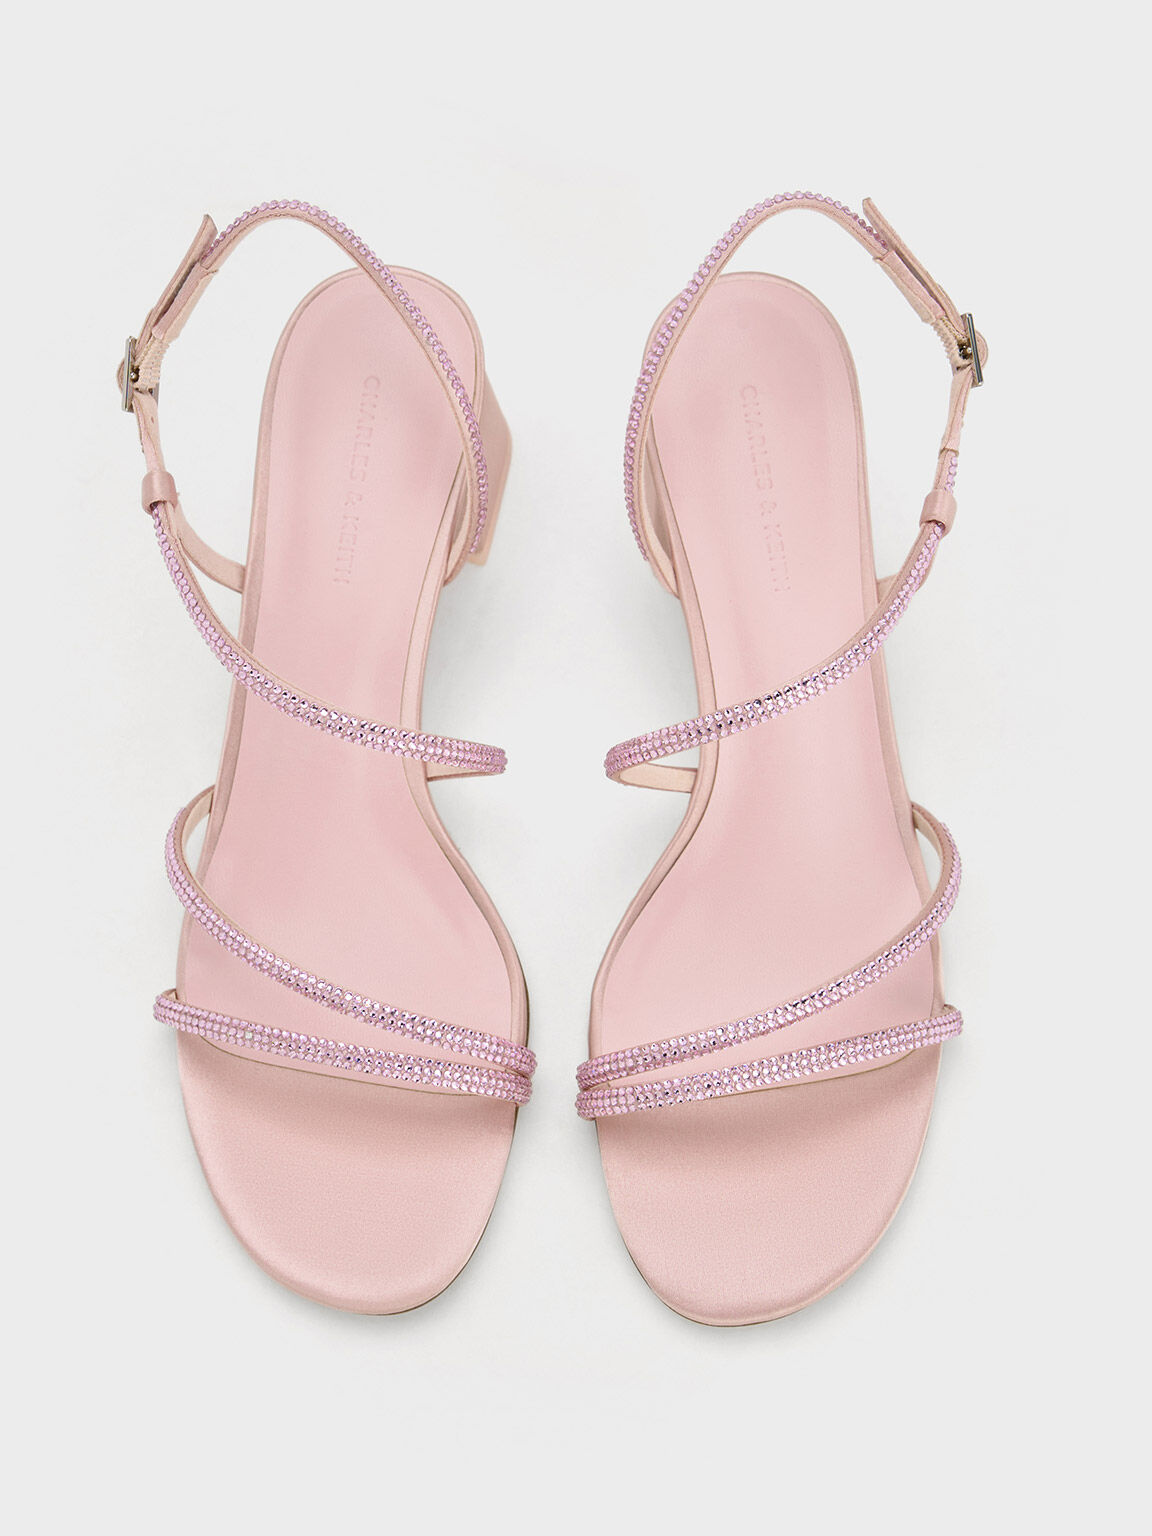 Satin Crystal-Embellished Block-Heel Strappy Sandals, Light Pink, hi-res